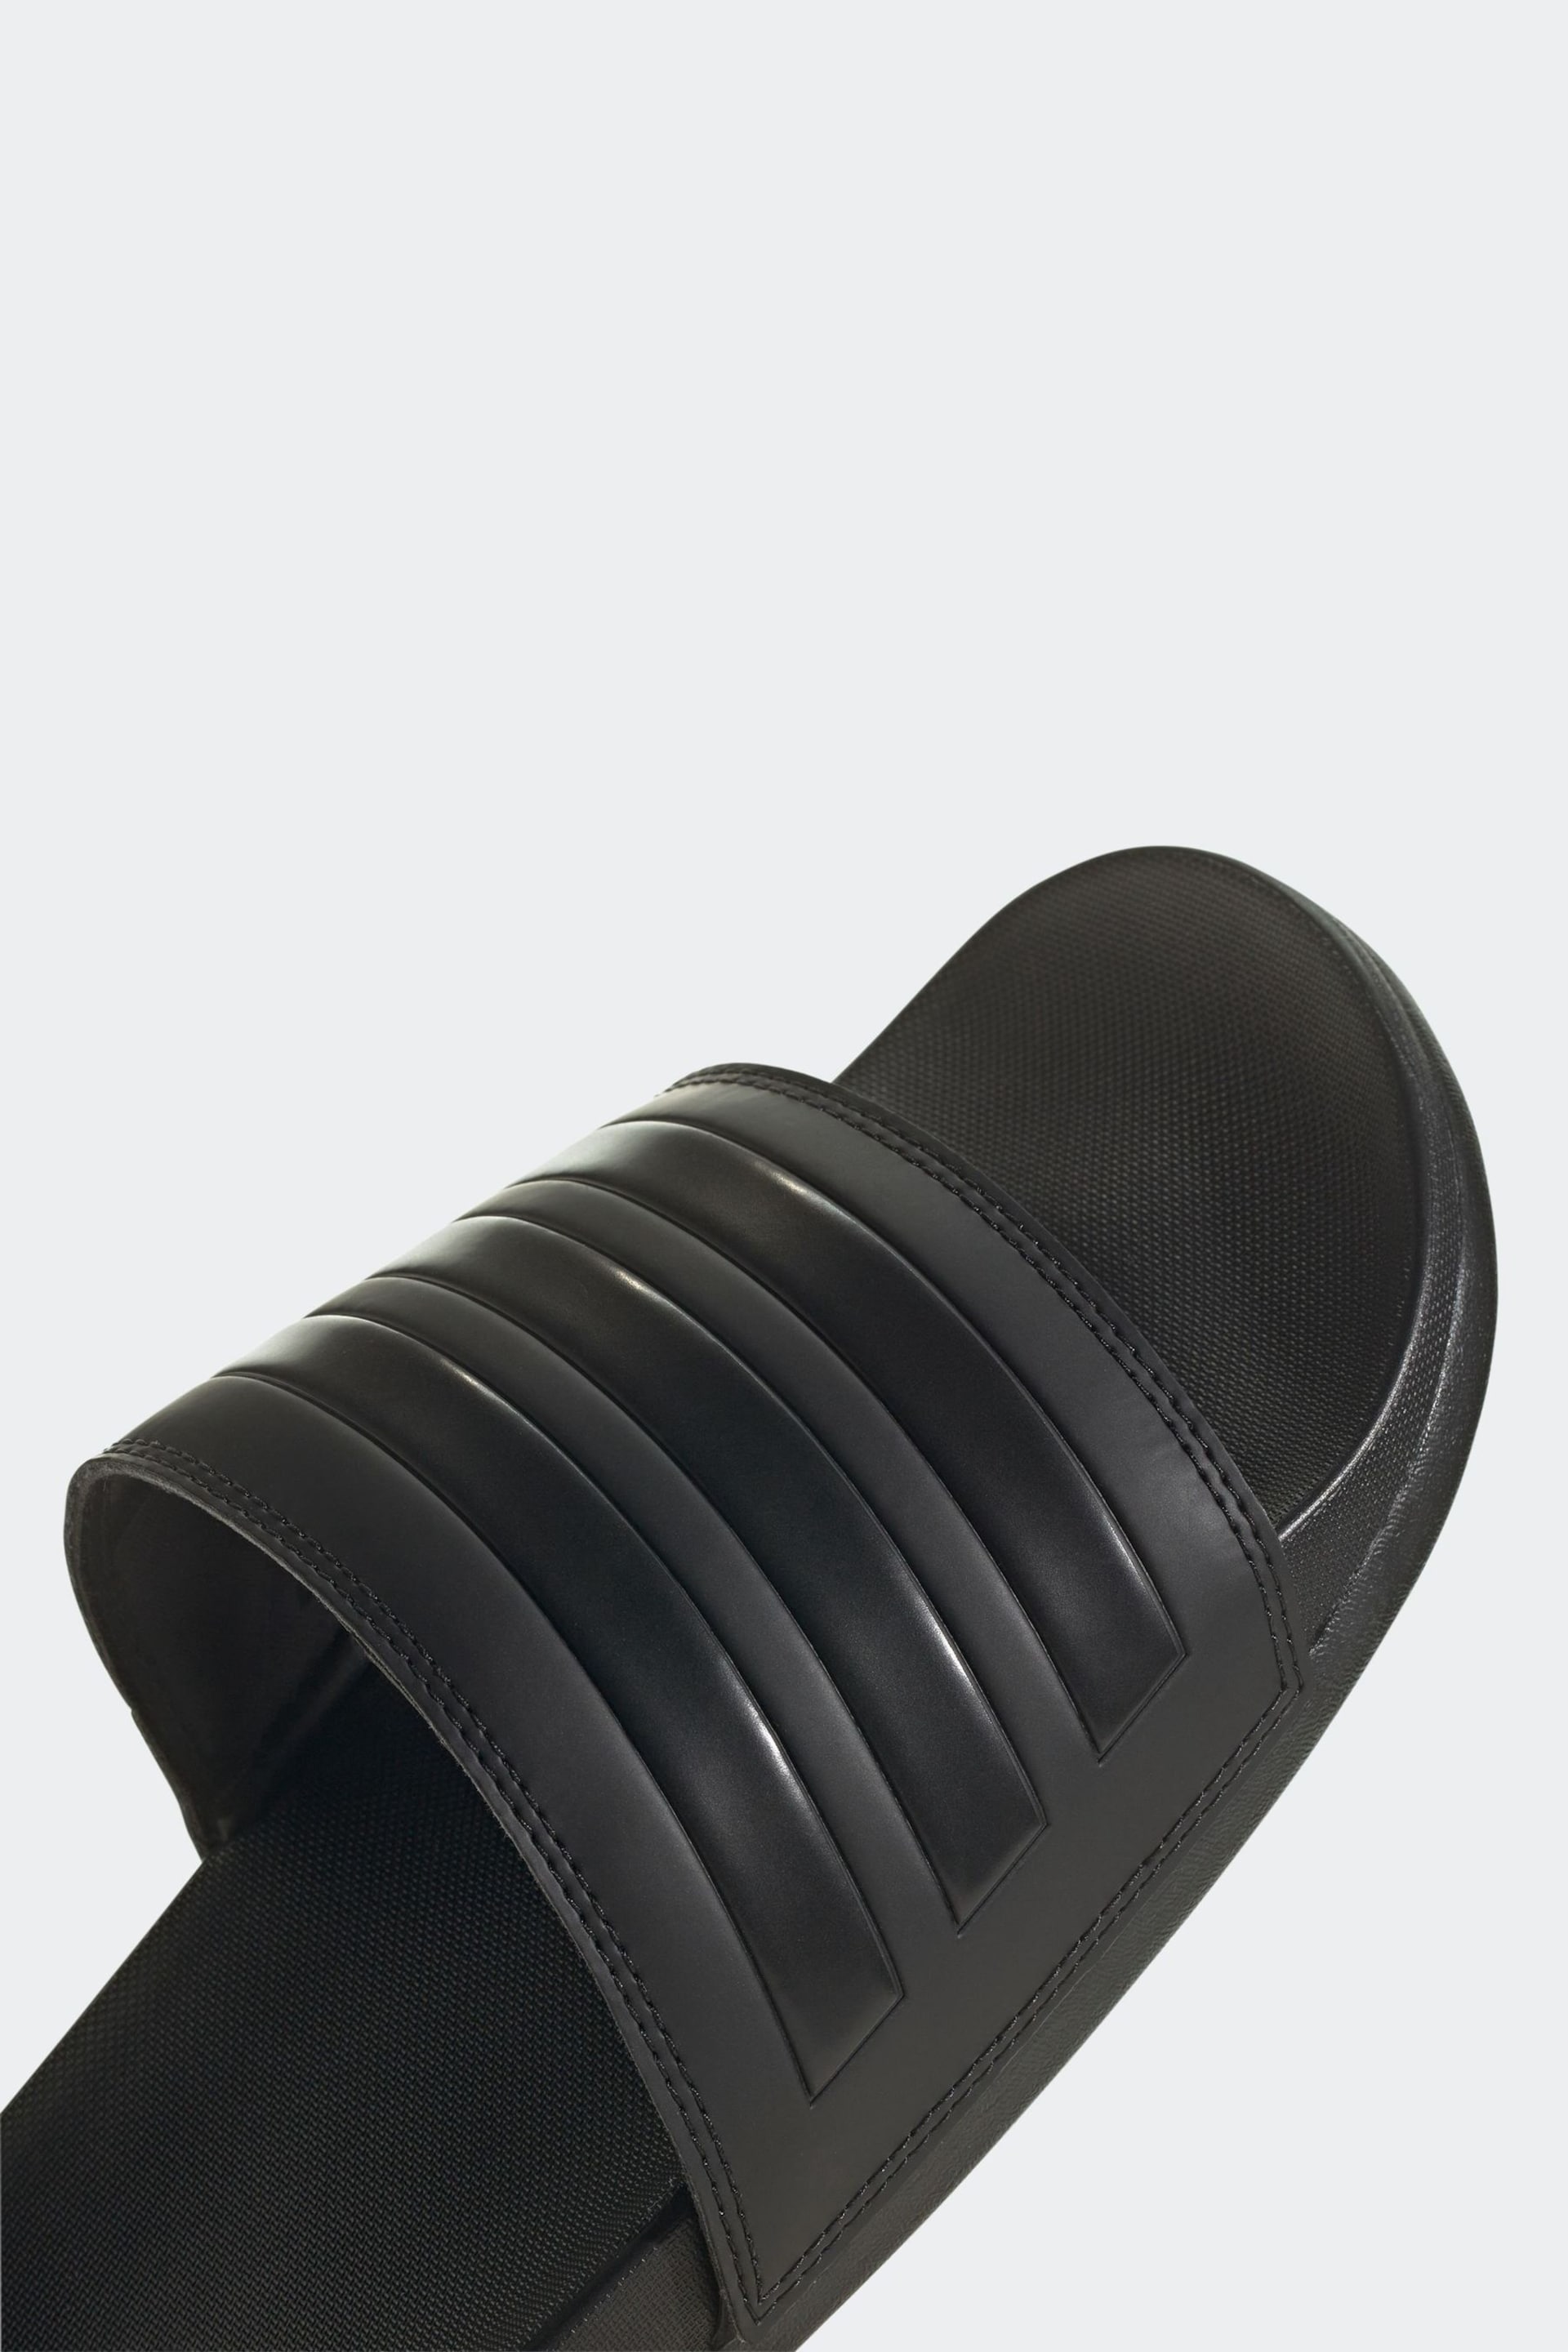 adidas Black Adilette Comfort Slides - Image 5 of 9